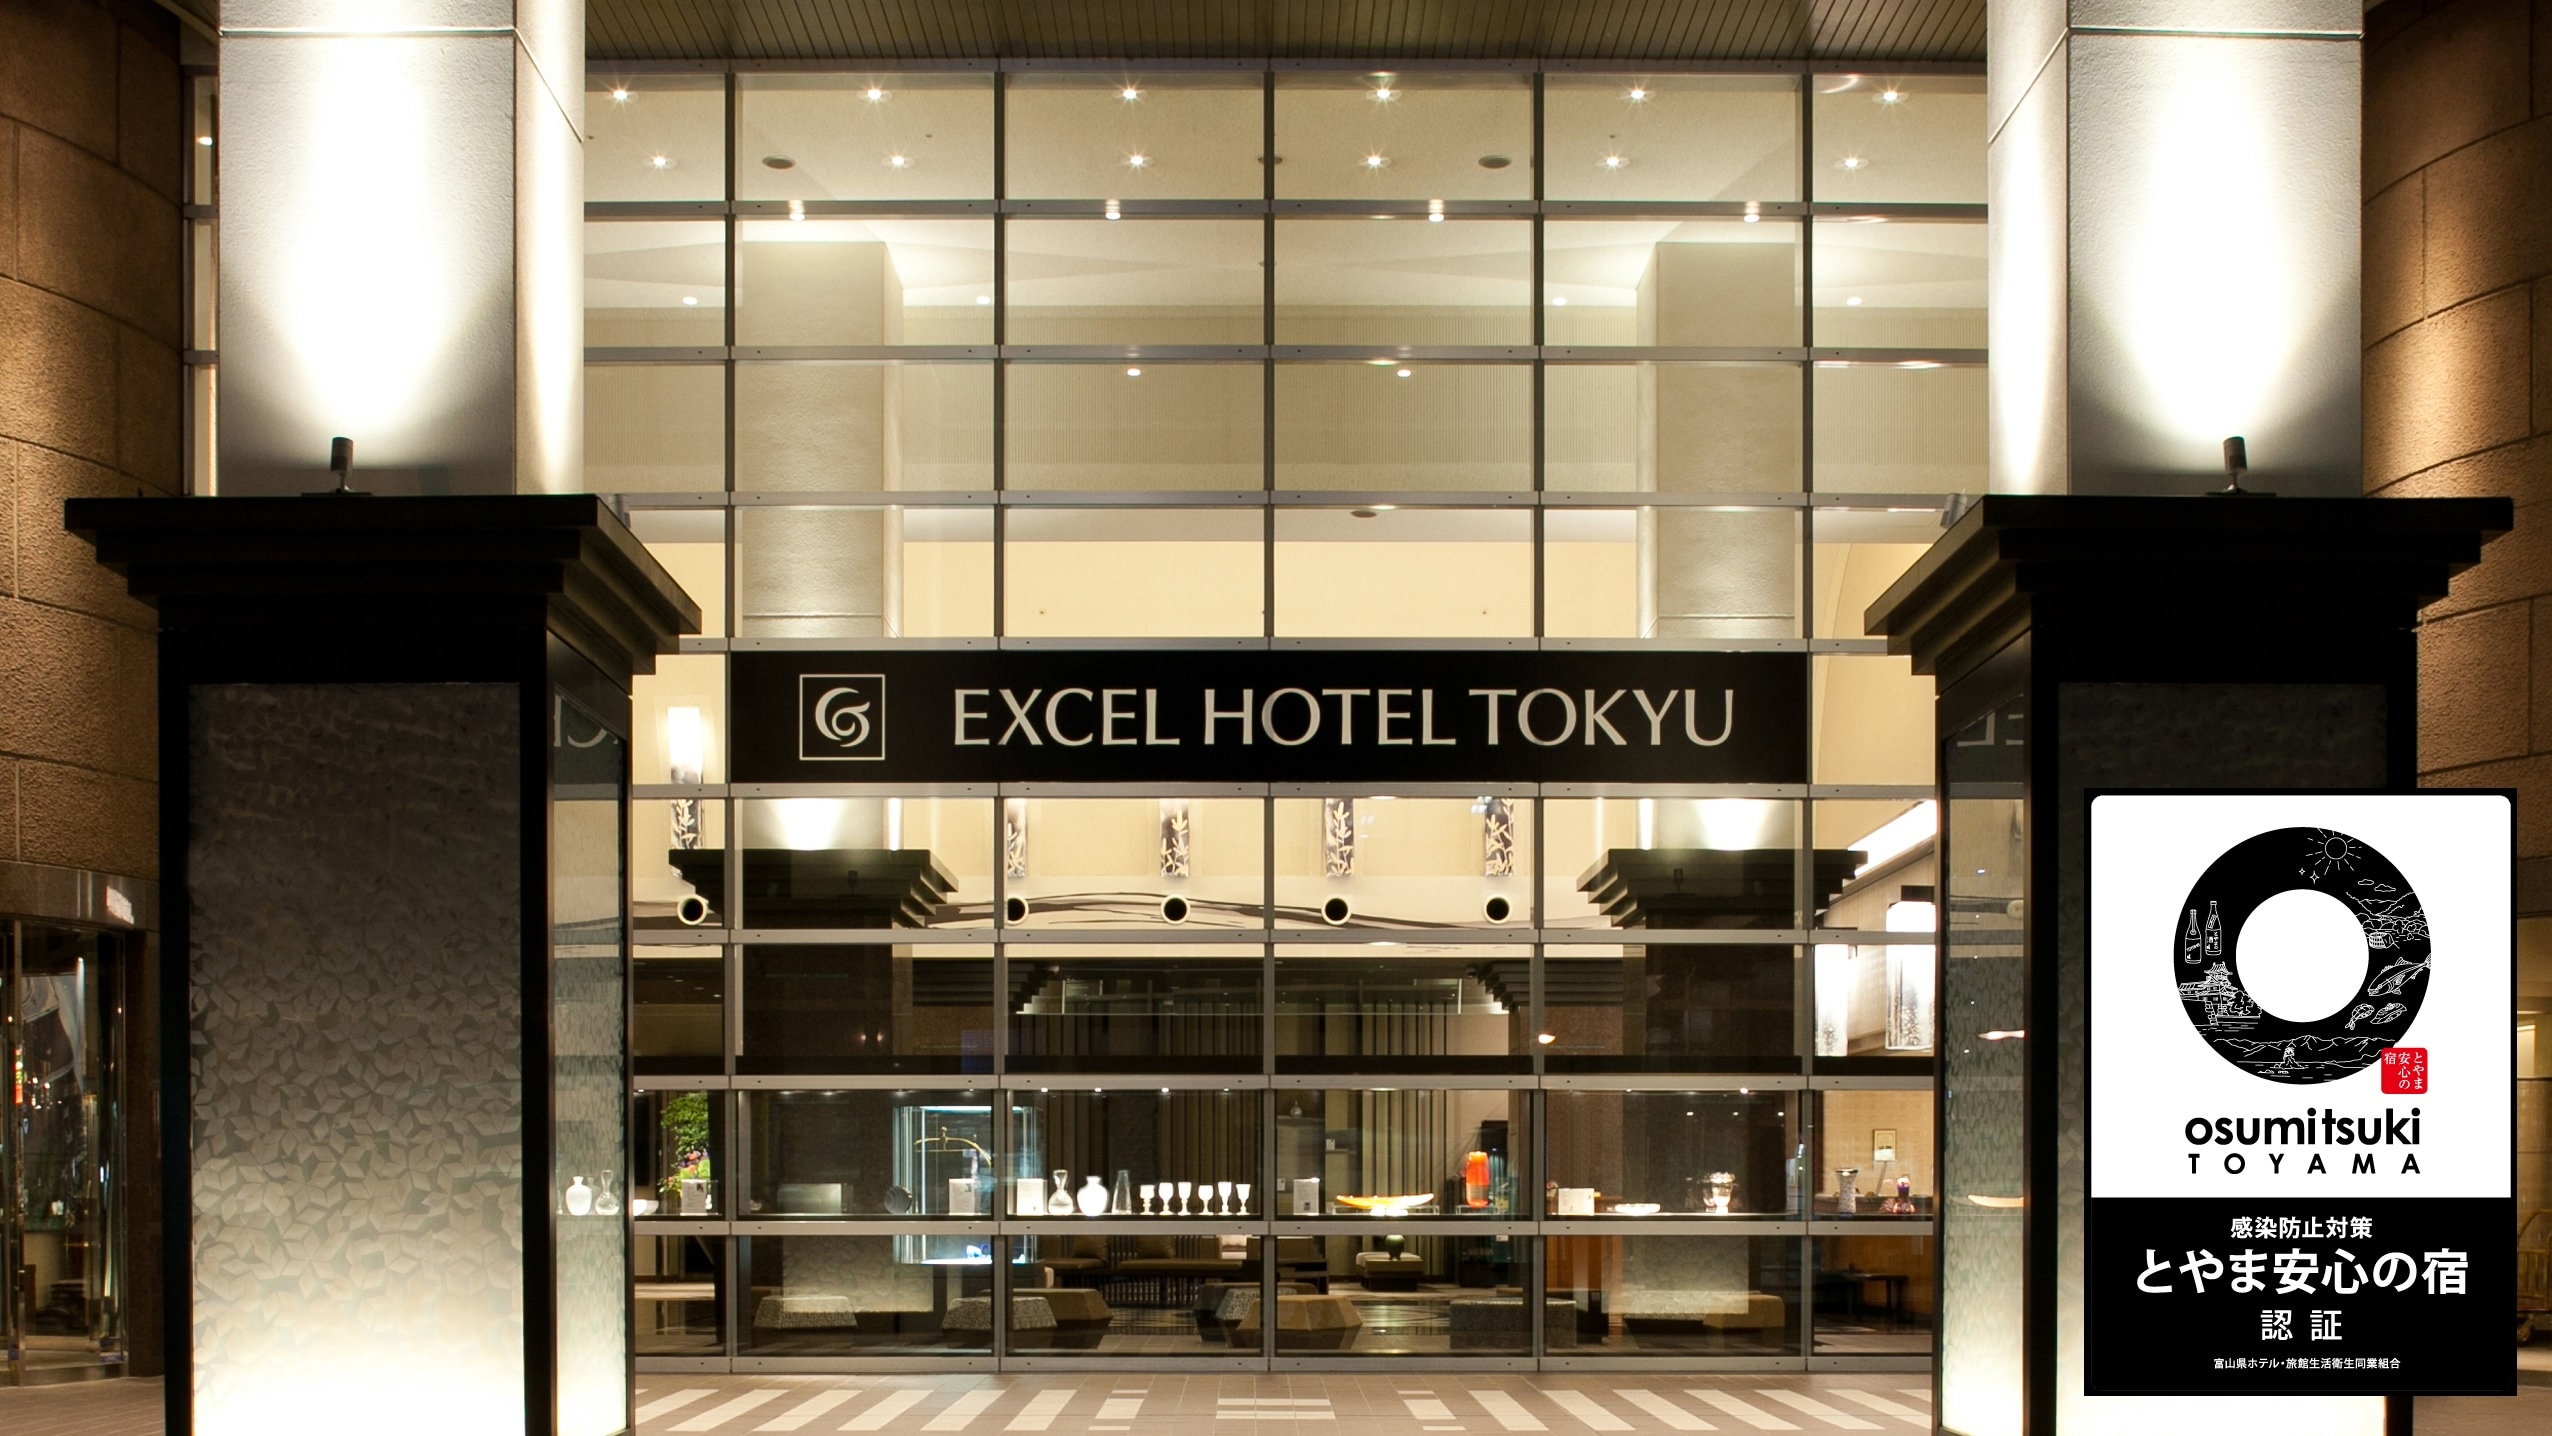 酒店外觀富山安全旅館認證